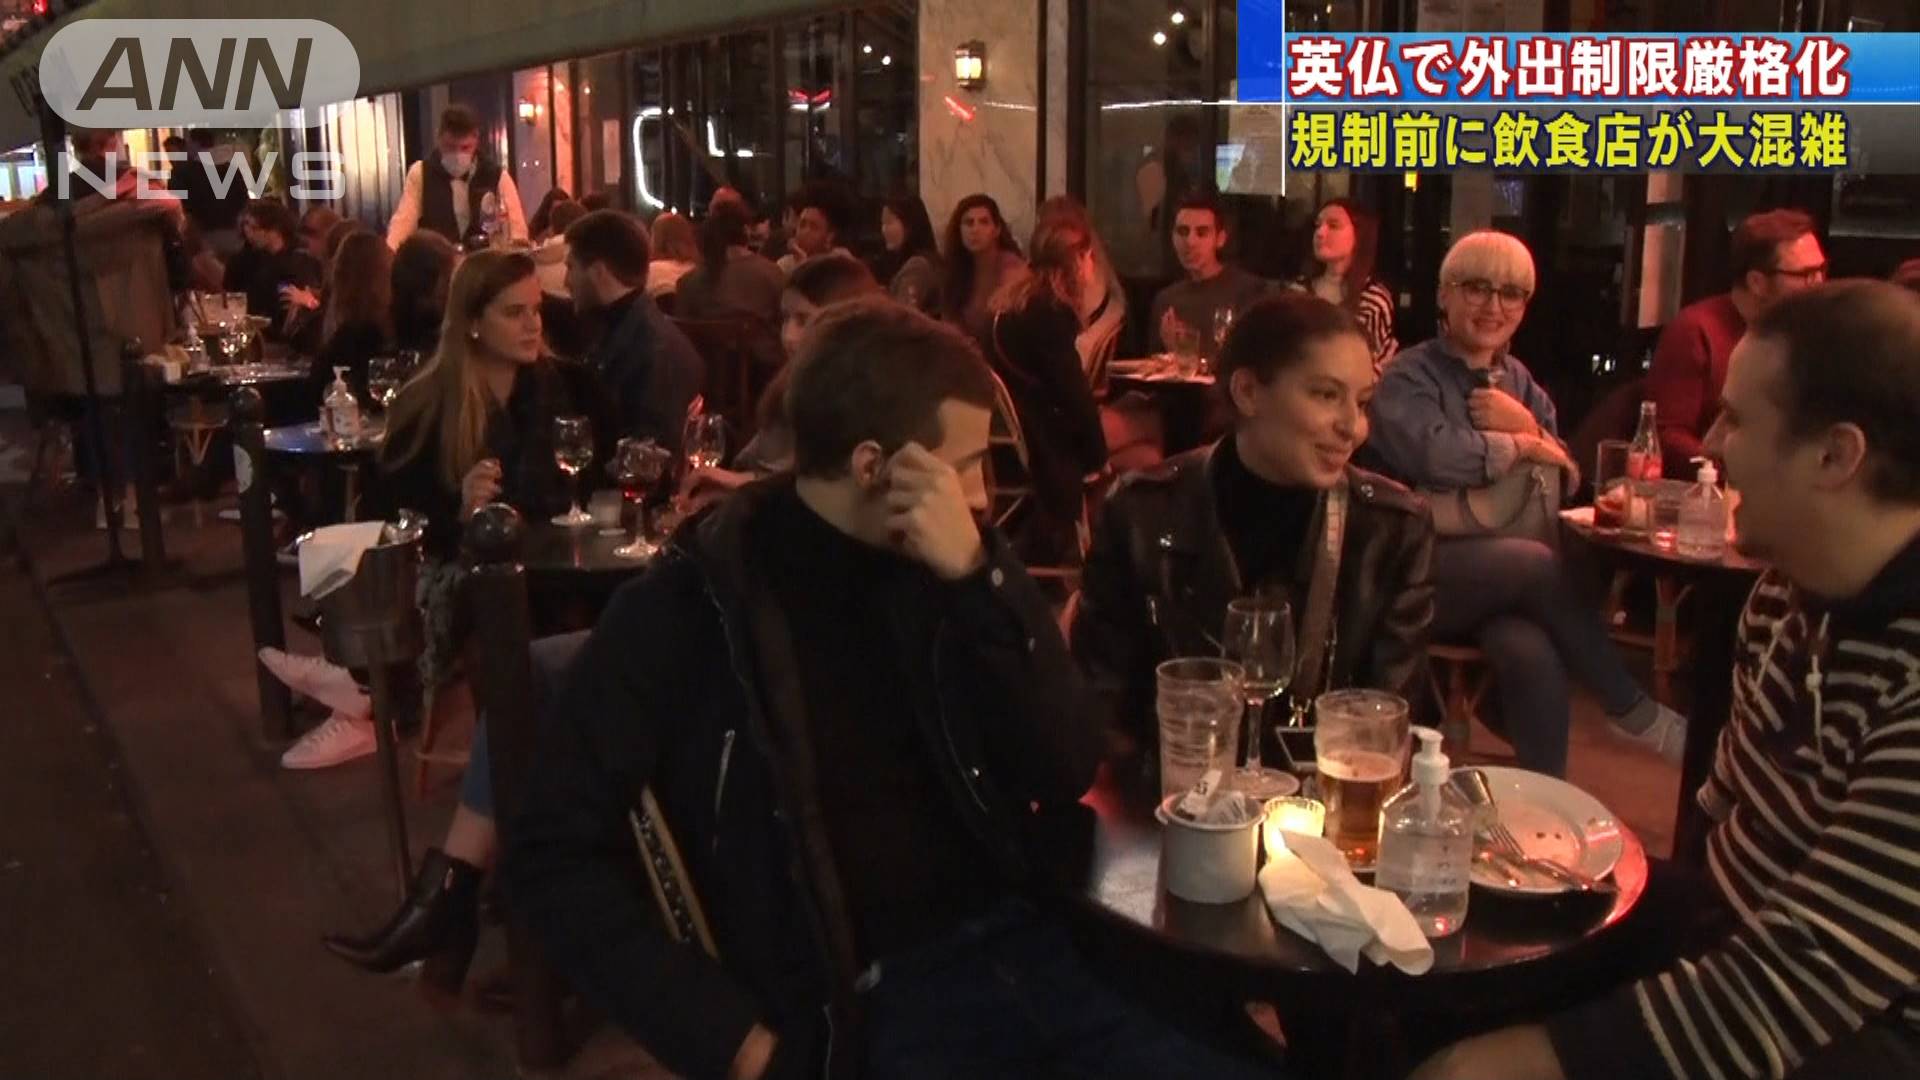 英仏で外出制限厳格化 規制前に飲食店が大混雑 テレ朝news テレビ朝日のニュースサイト